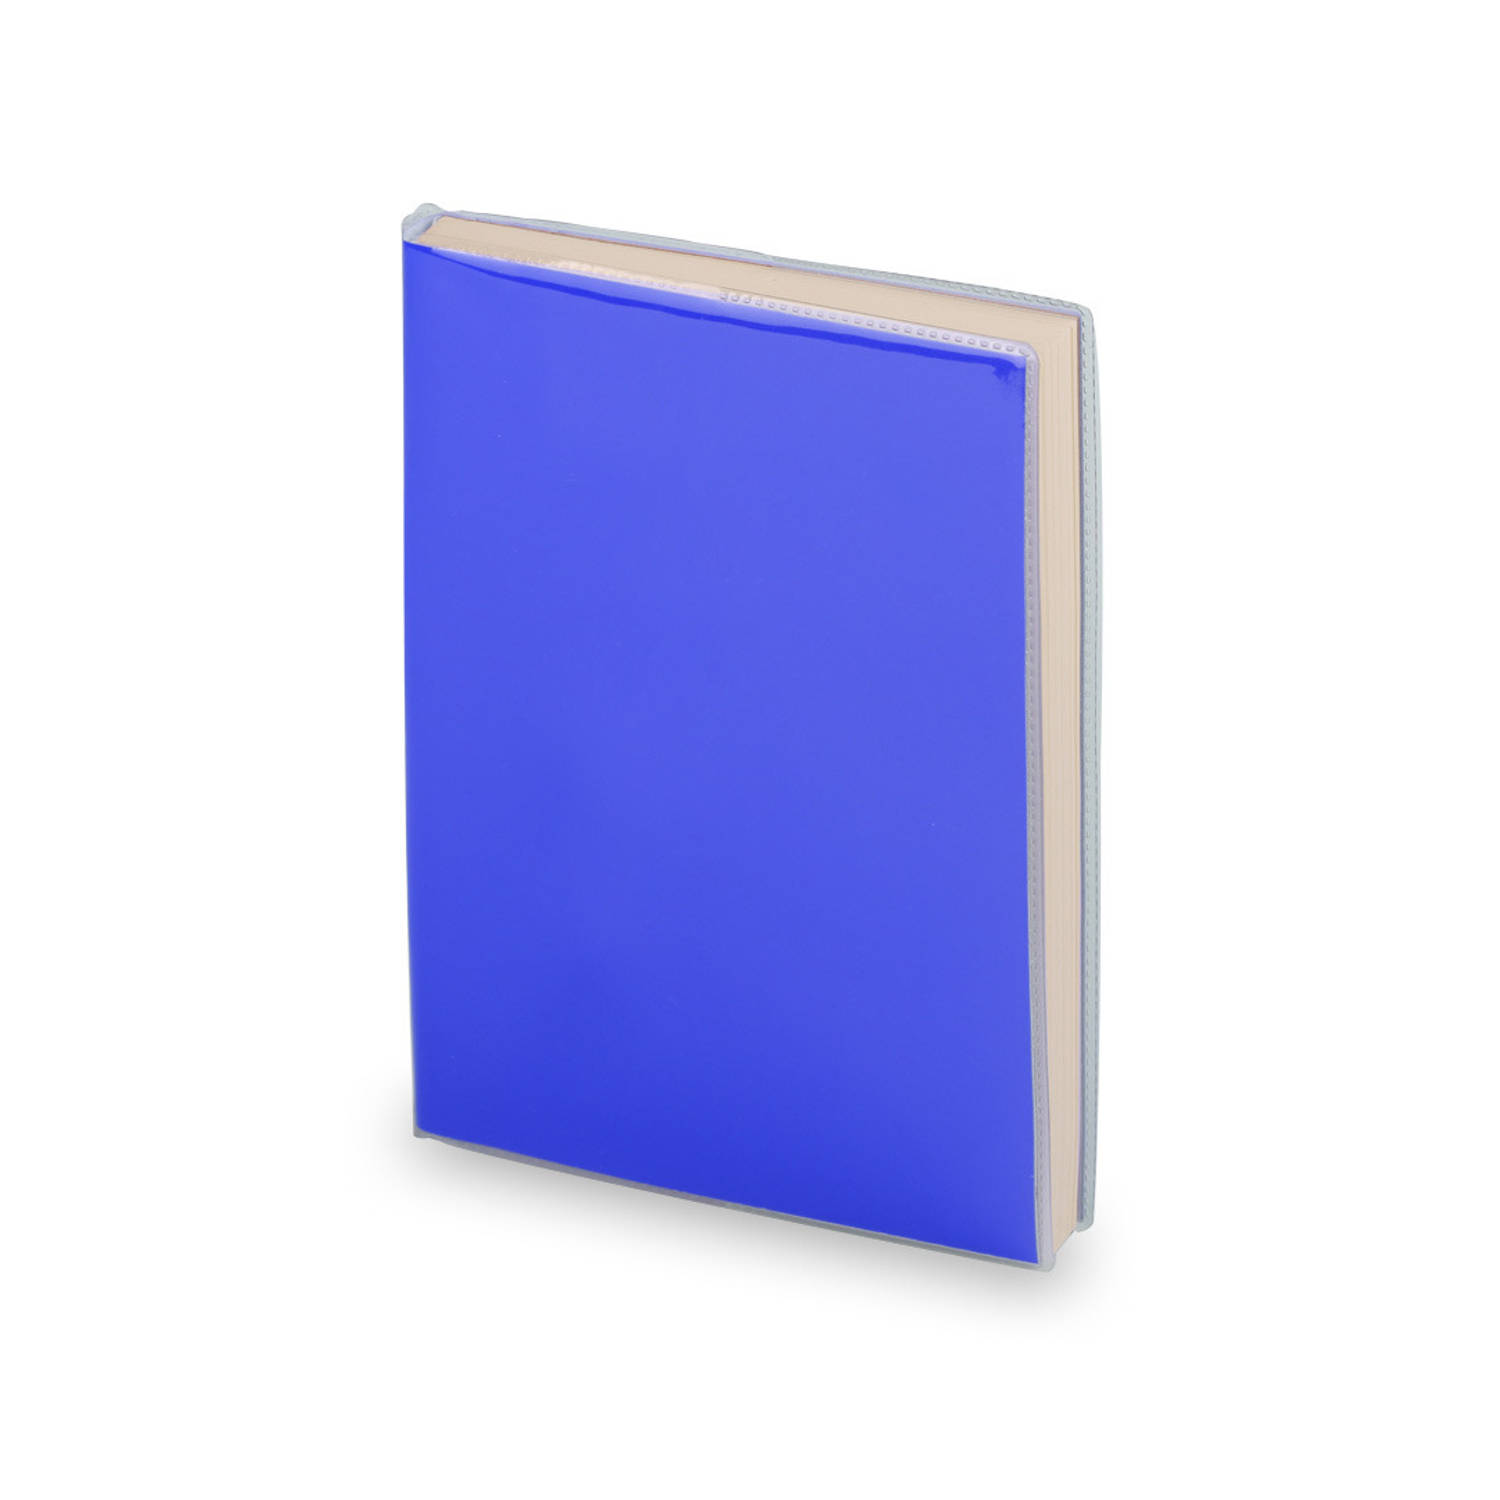 Notitieblokje zachte kaft blauw 10 x 13 cm - Notitieboek